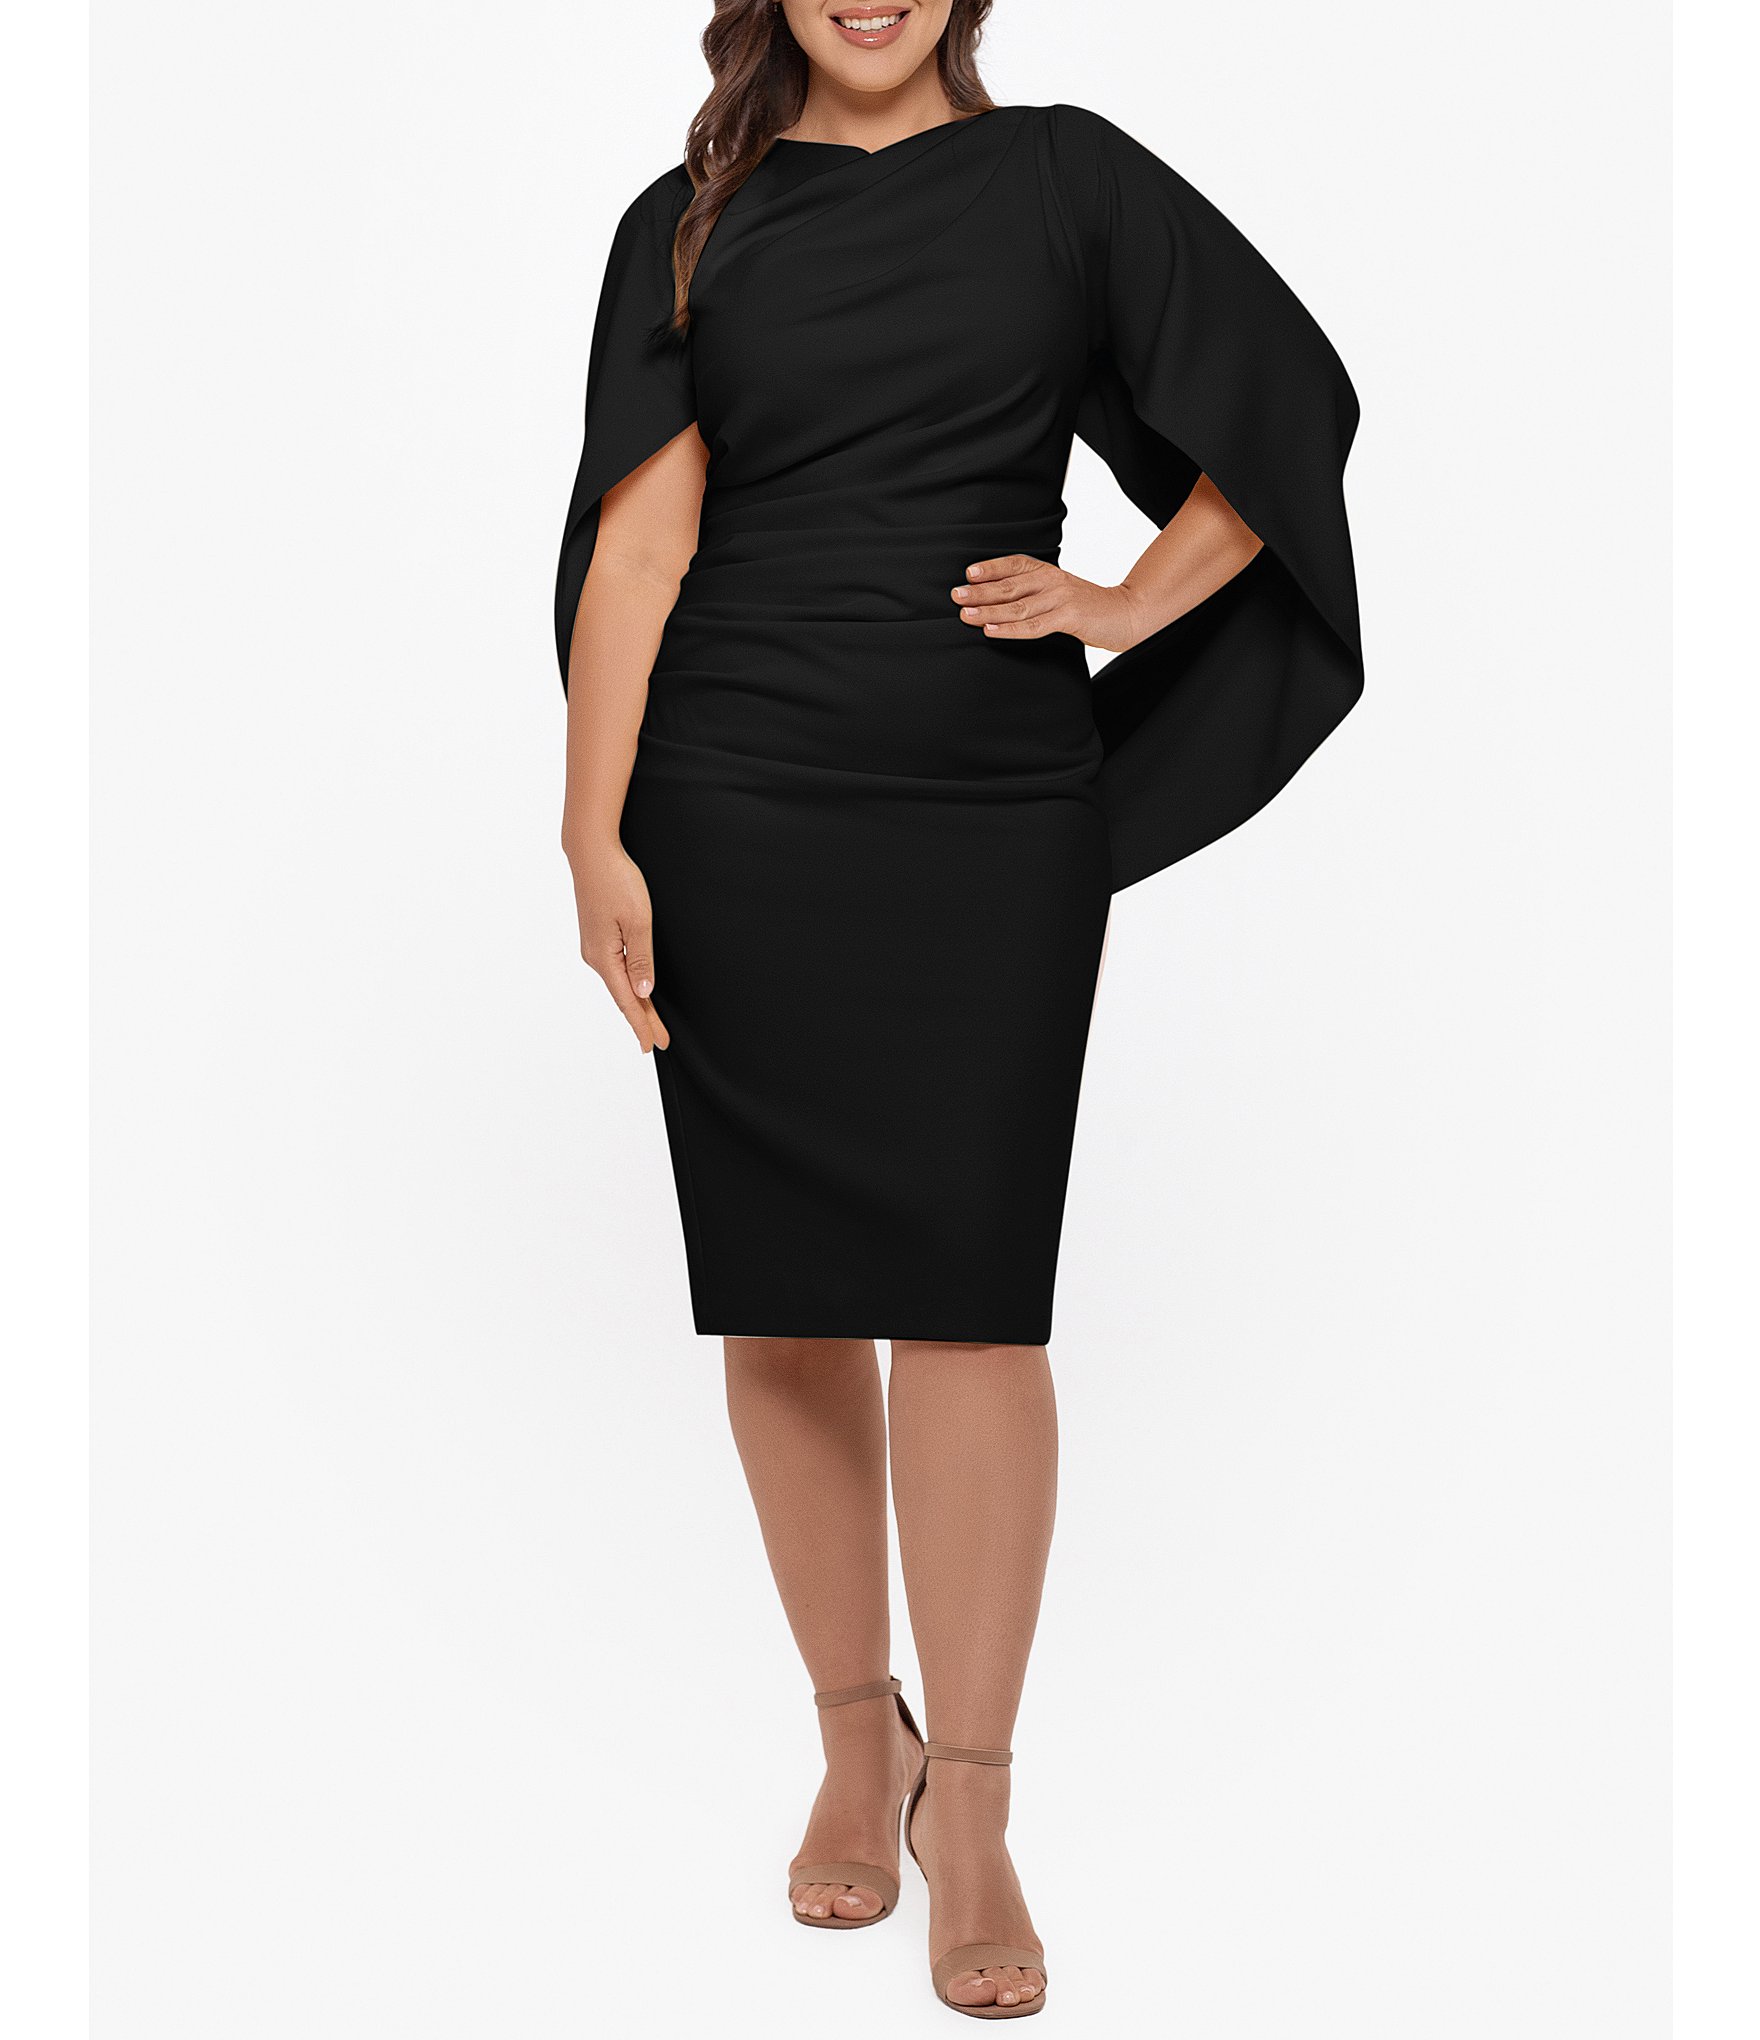 Plus Size Black Formal Dresses with short sleeve design  Black knee length  dress, Black formal dress short, Black dress formal